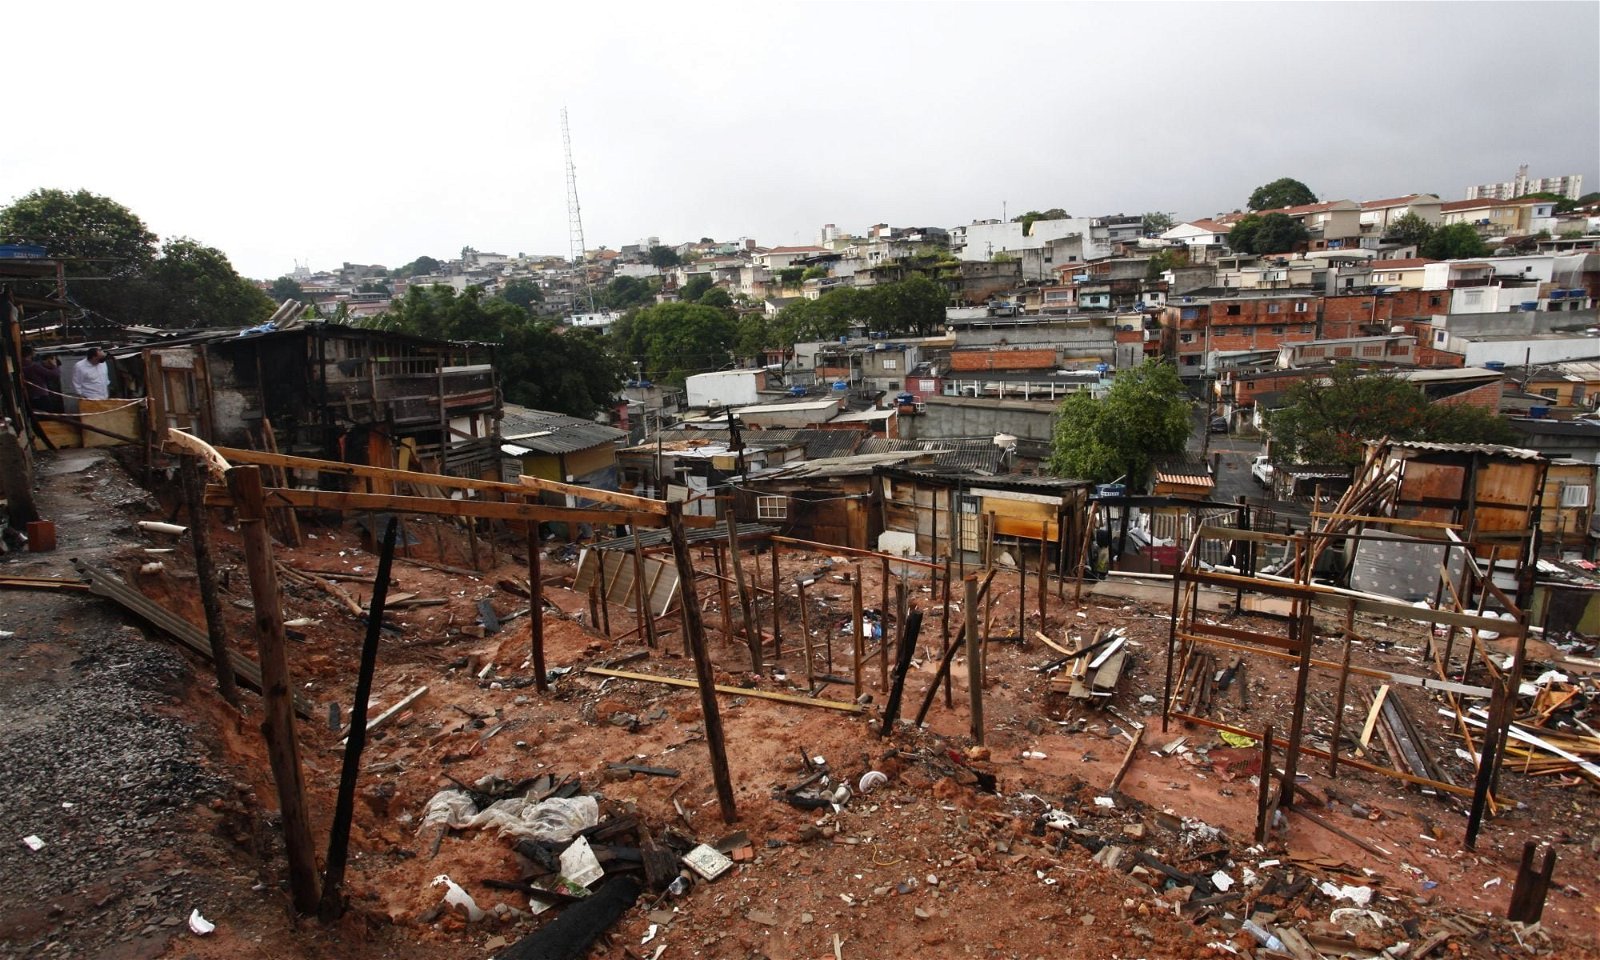 Área atingida pelo fogo. Pedaços de madeiras usados para montar barracos ainda fincadas no solo. Ao fundo a cidade de São Paulo, com casas de alvenaria.